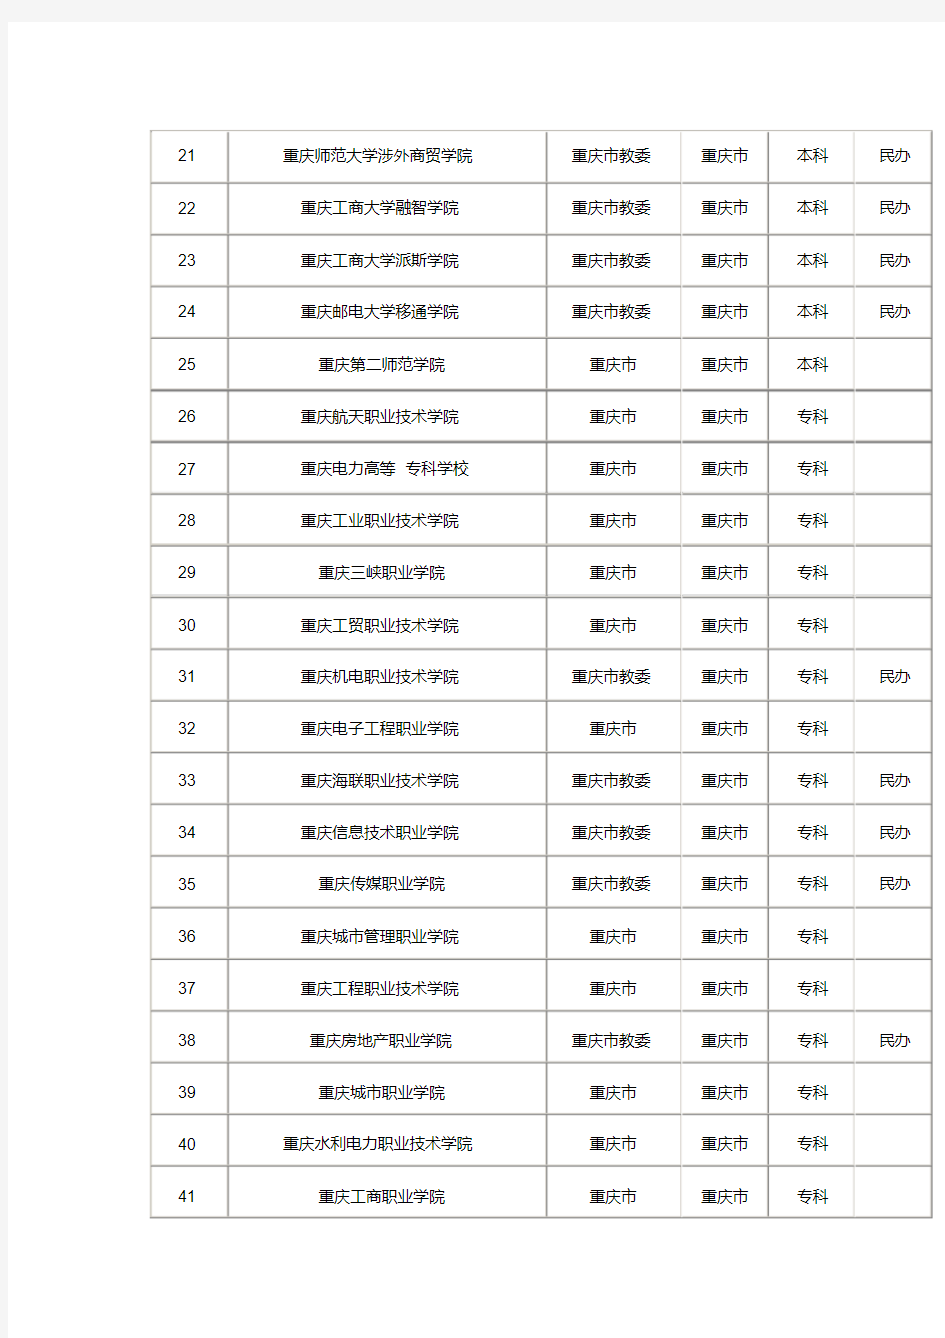 (完整版)重庆所有高校名单